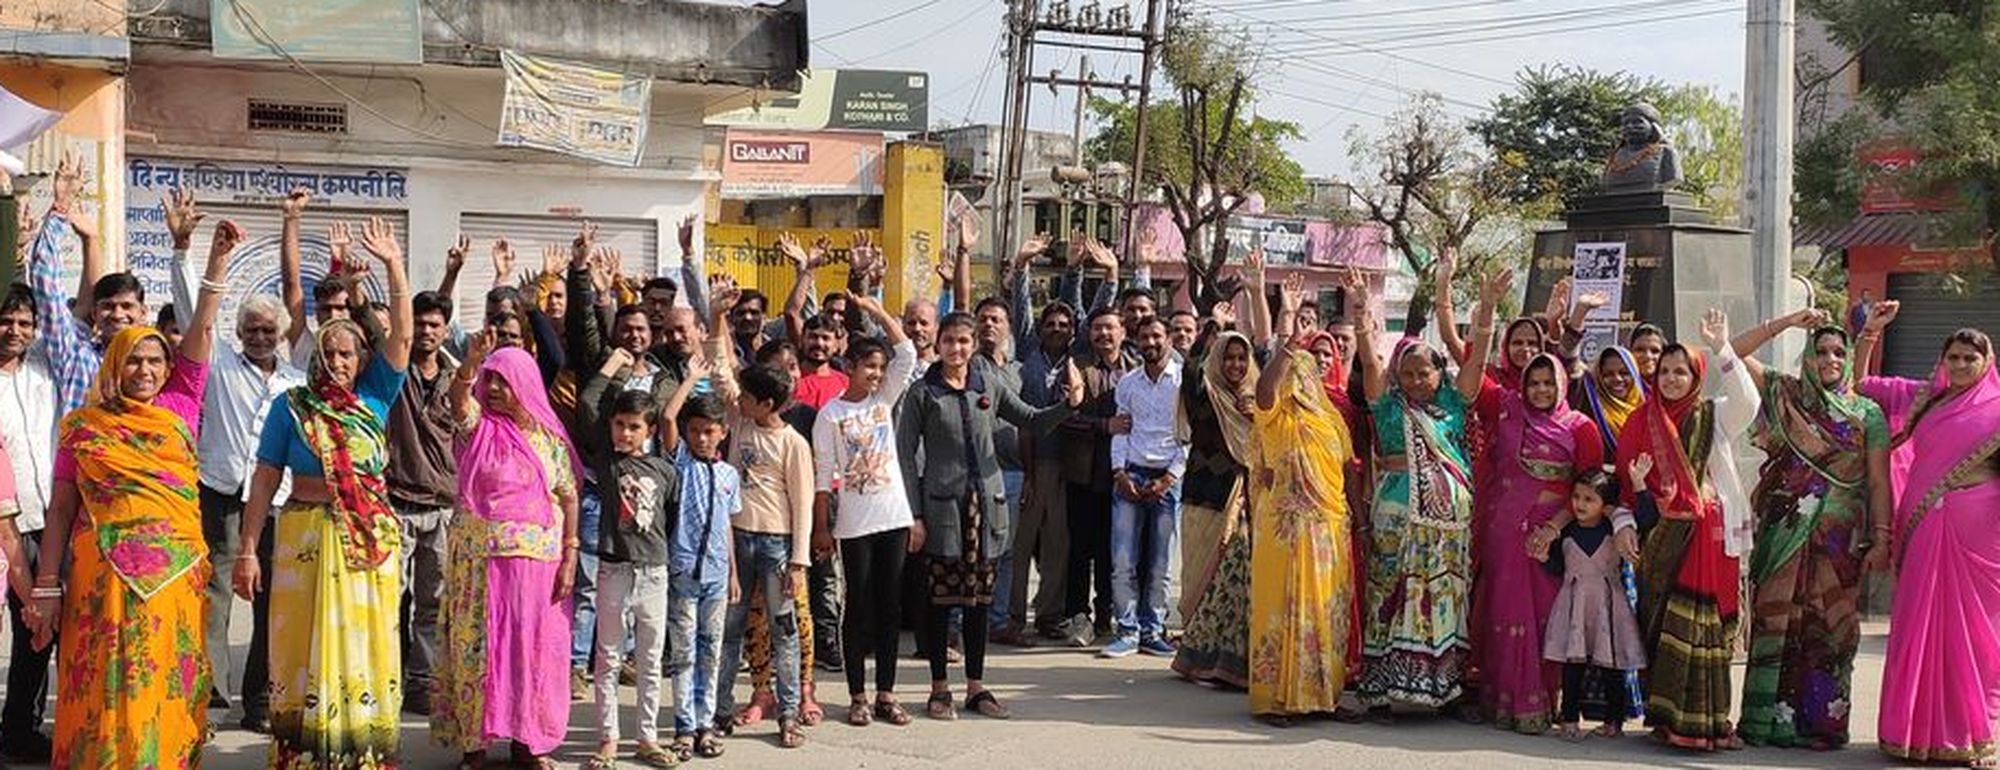 बलात्कार की घटनाओं का विरोध: पहले सड़कों पर उतरा 'आक्रोश, फिर बाजार के सन्नाटे ने दिया 'संदेश